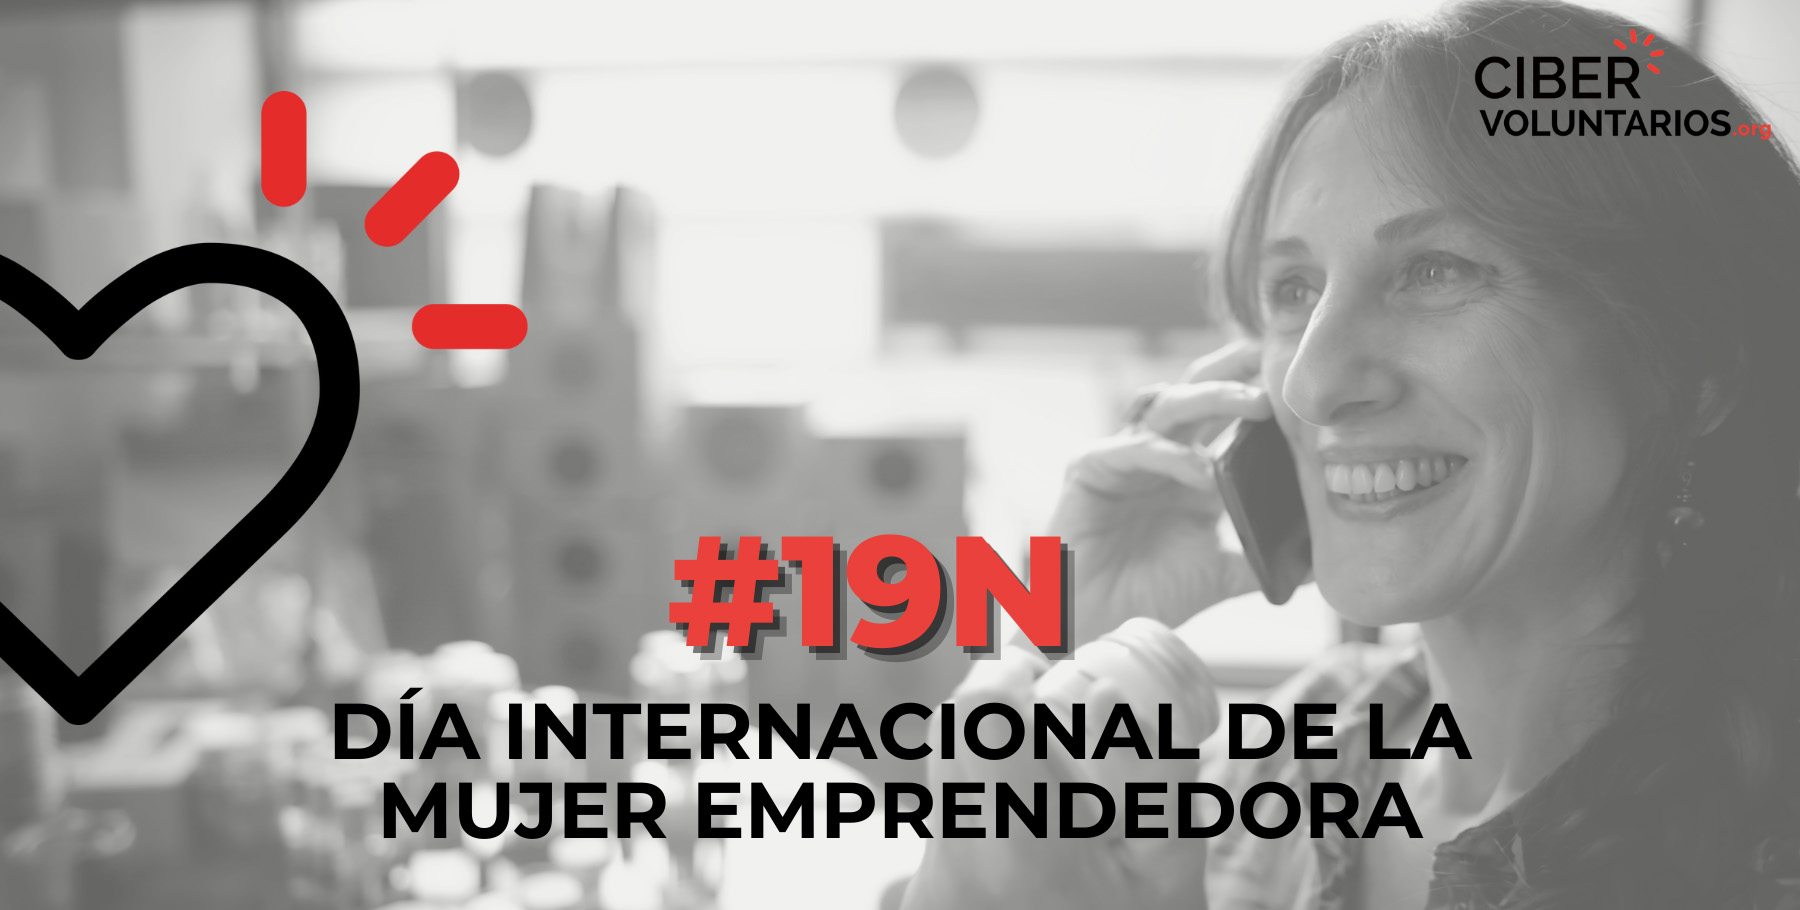 Fundación Cibervoluntarios celebra el Día Internacional de la Mujer Emprendedora